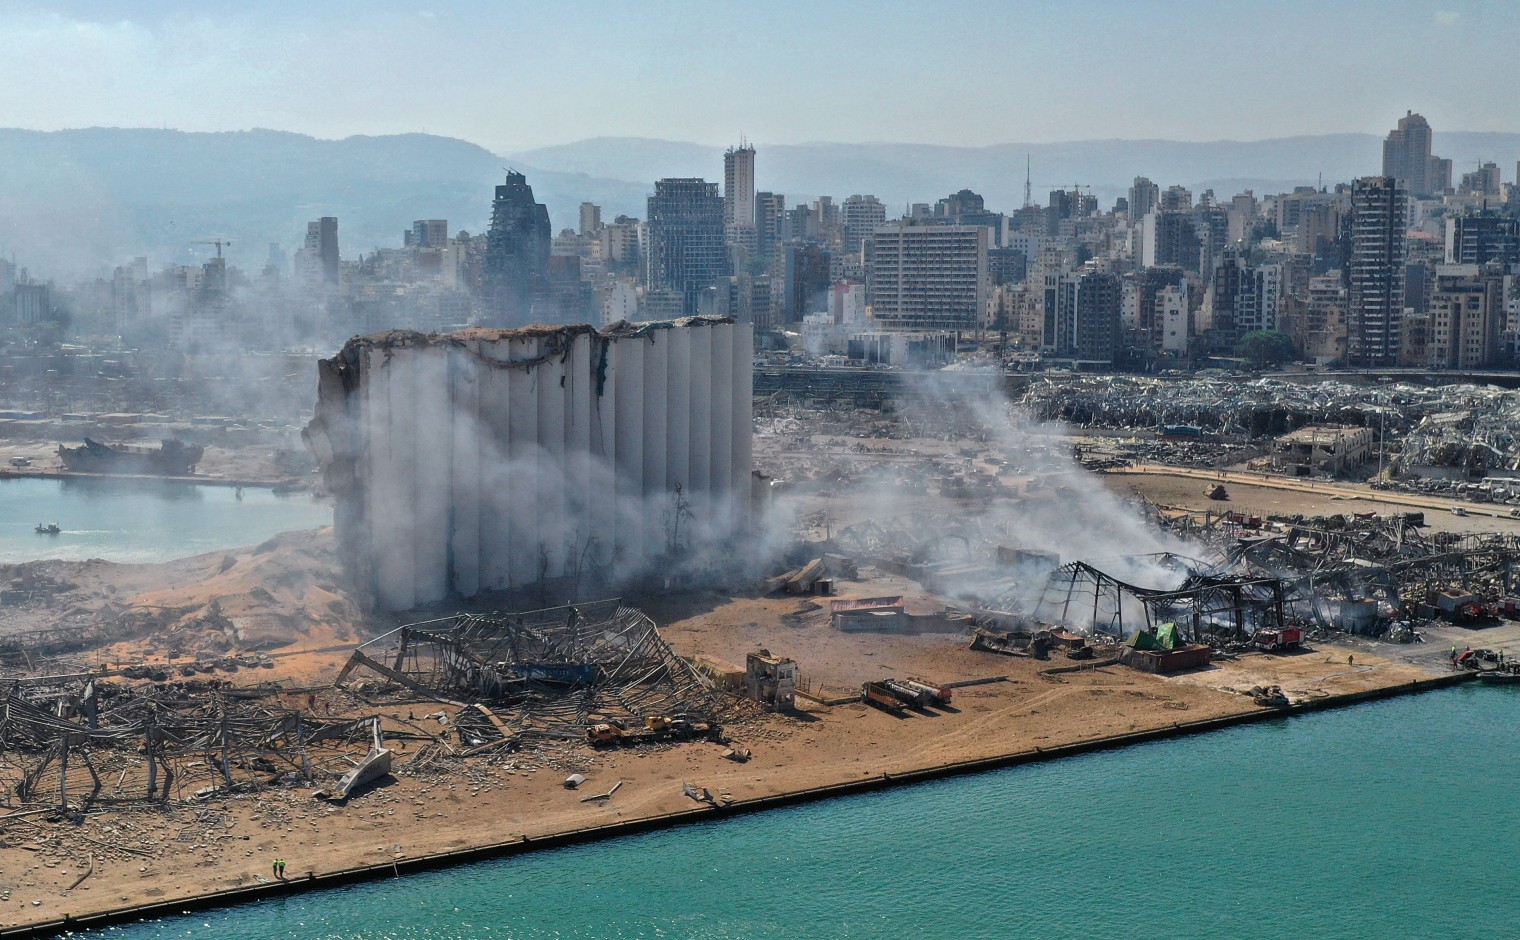 De haven van Beiroet is verwoest, maar door de hele stad is de schade groot.